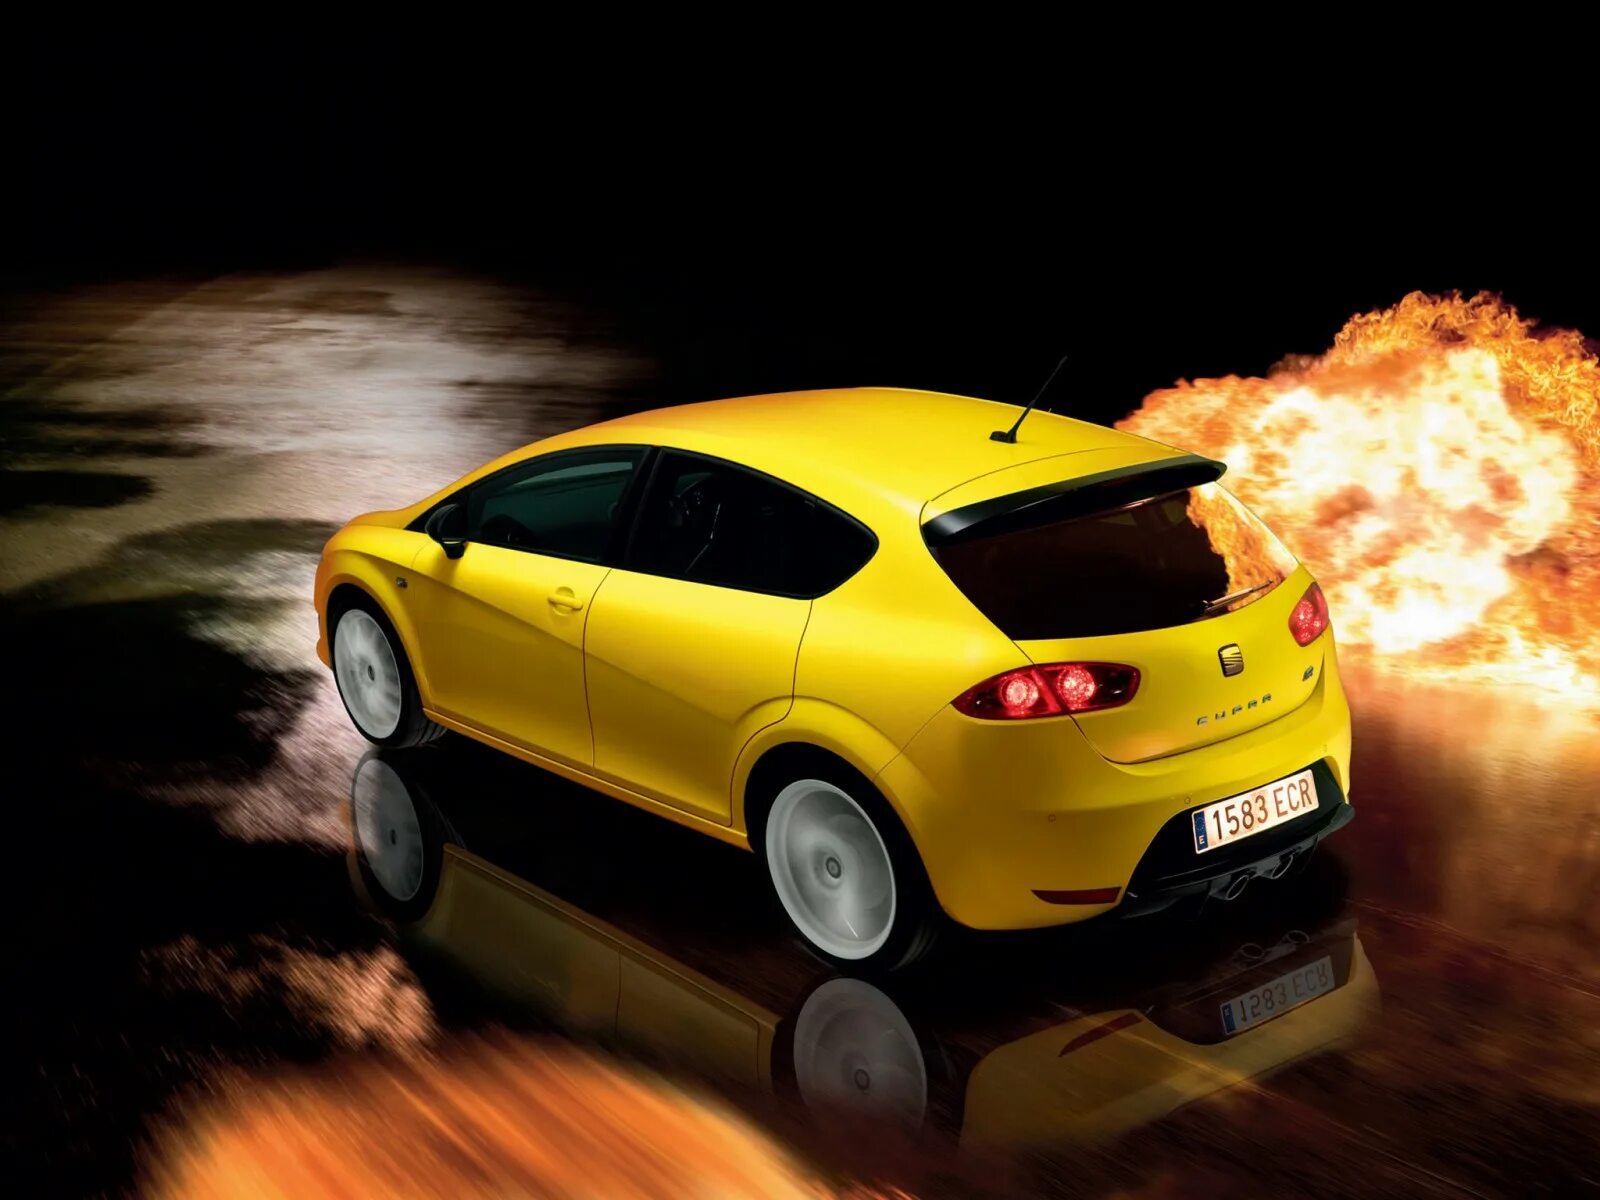 Включи желтый автомобиль. Seat Leon оранжевый. Автомобиль. Желтое авто. Картинки с авто с однотонным фоном.